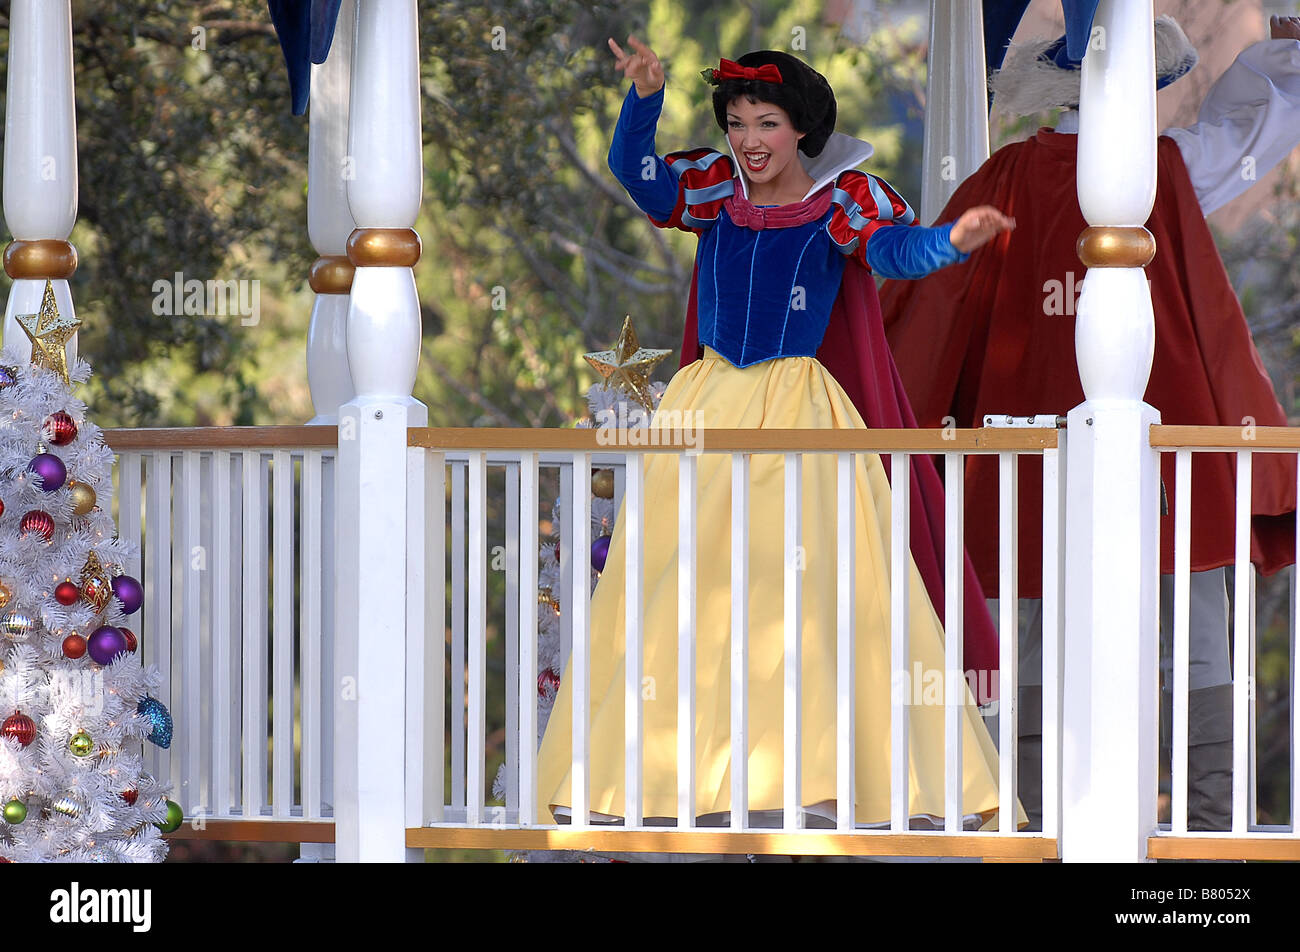 Snow White at Magic Kingdom Orlando Florida Stock Photo